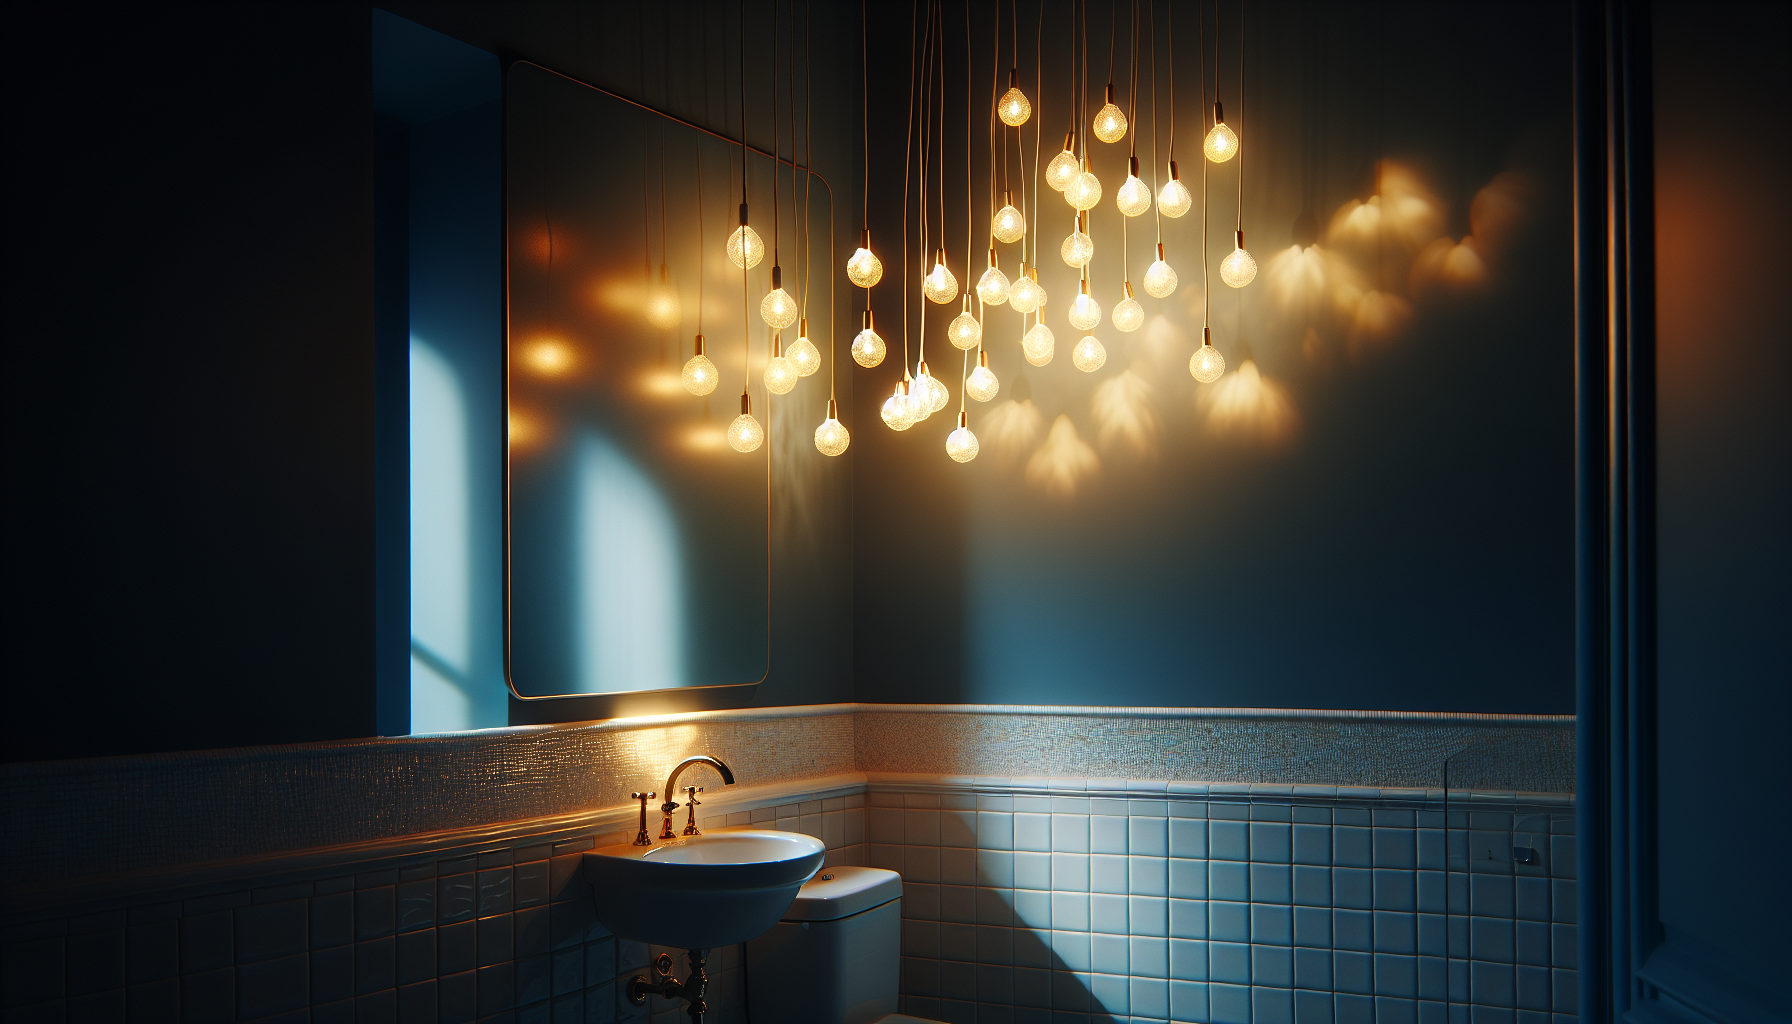 Stimmungsvolles Beleuchtungskonzept für ein angenehmes Badezimmerambiente